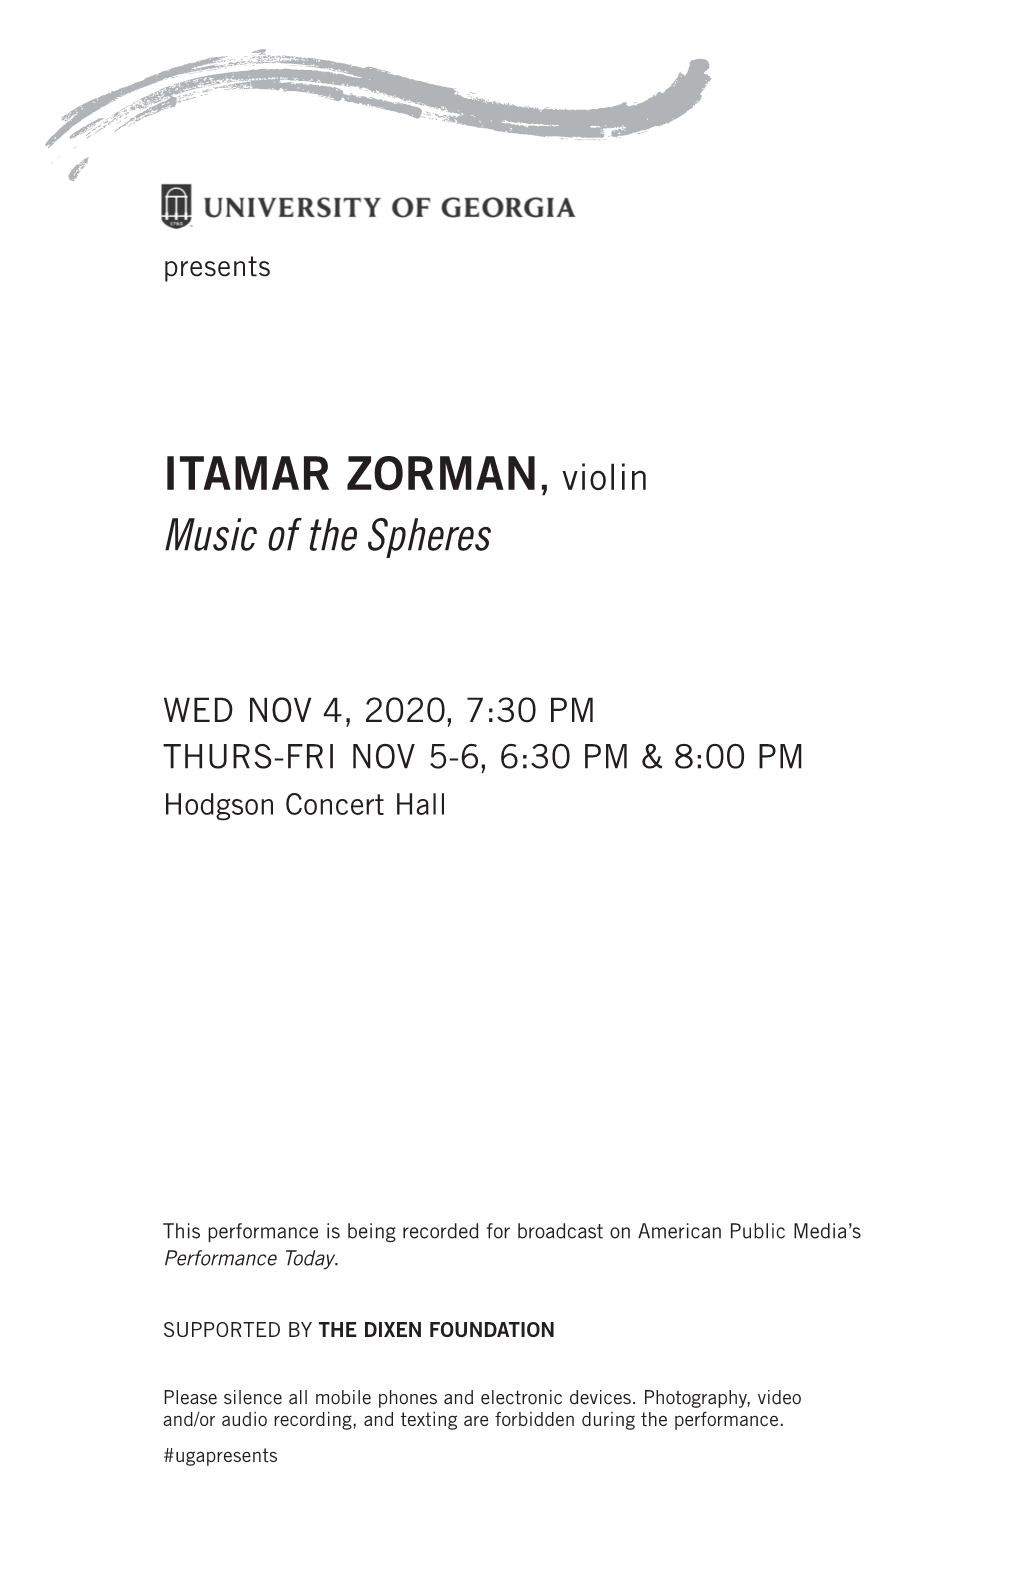 ITAMAR ZORMAN, Violin Music of the Spheres